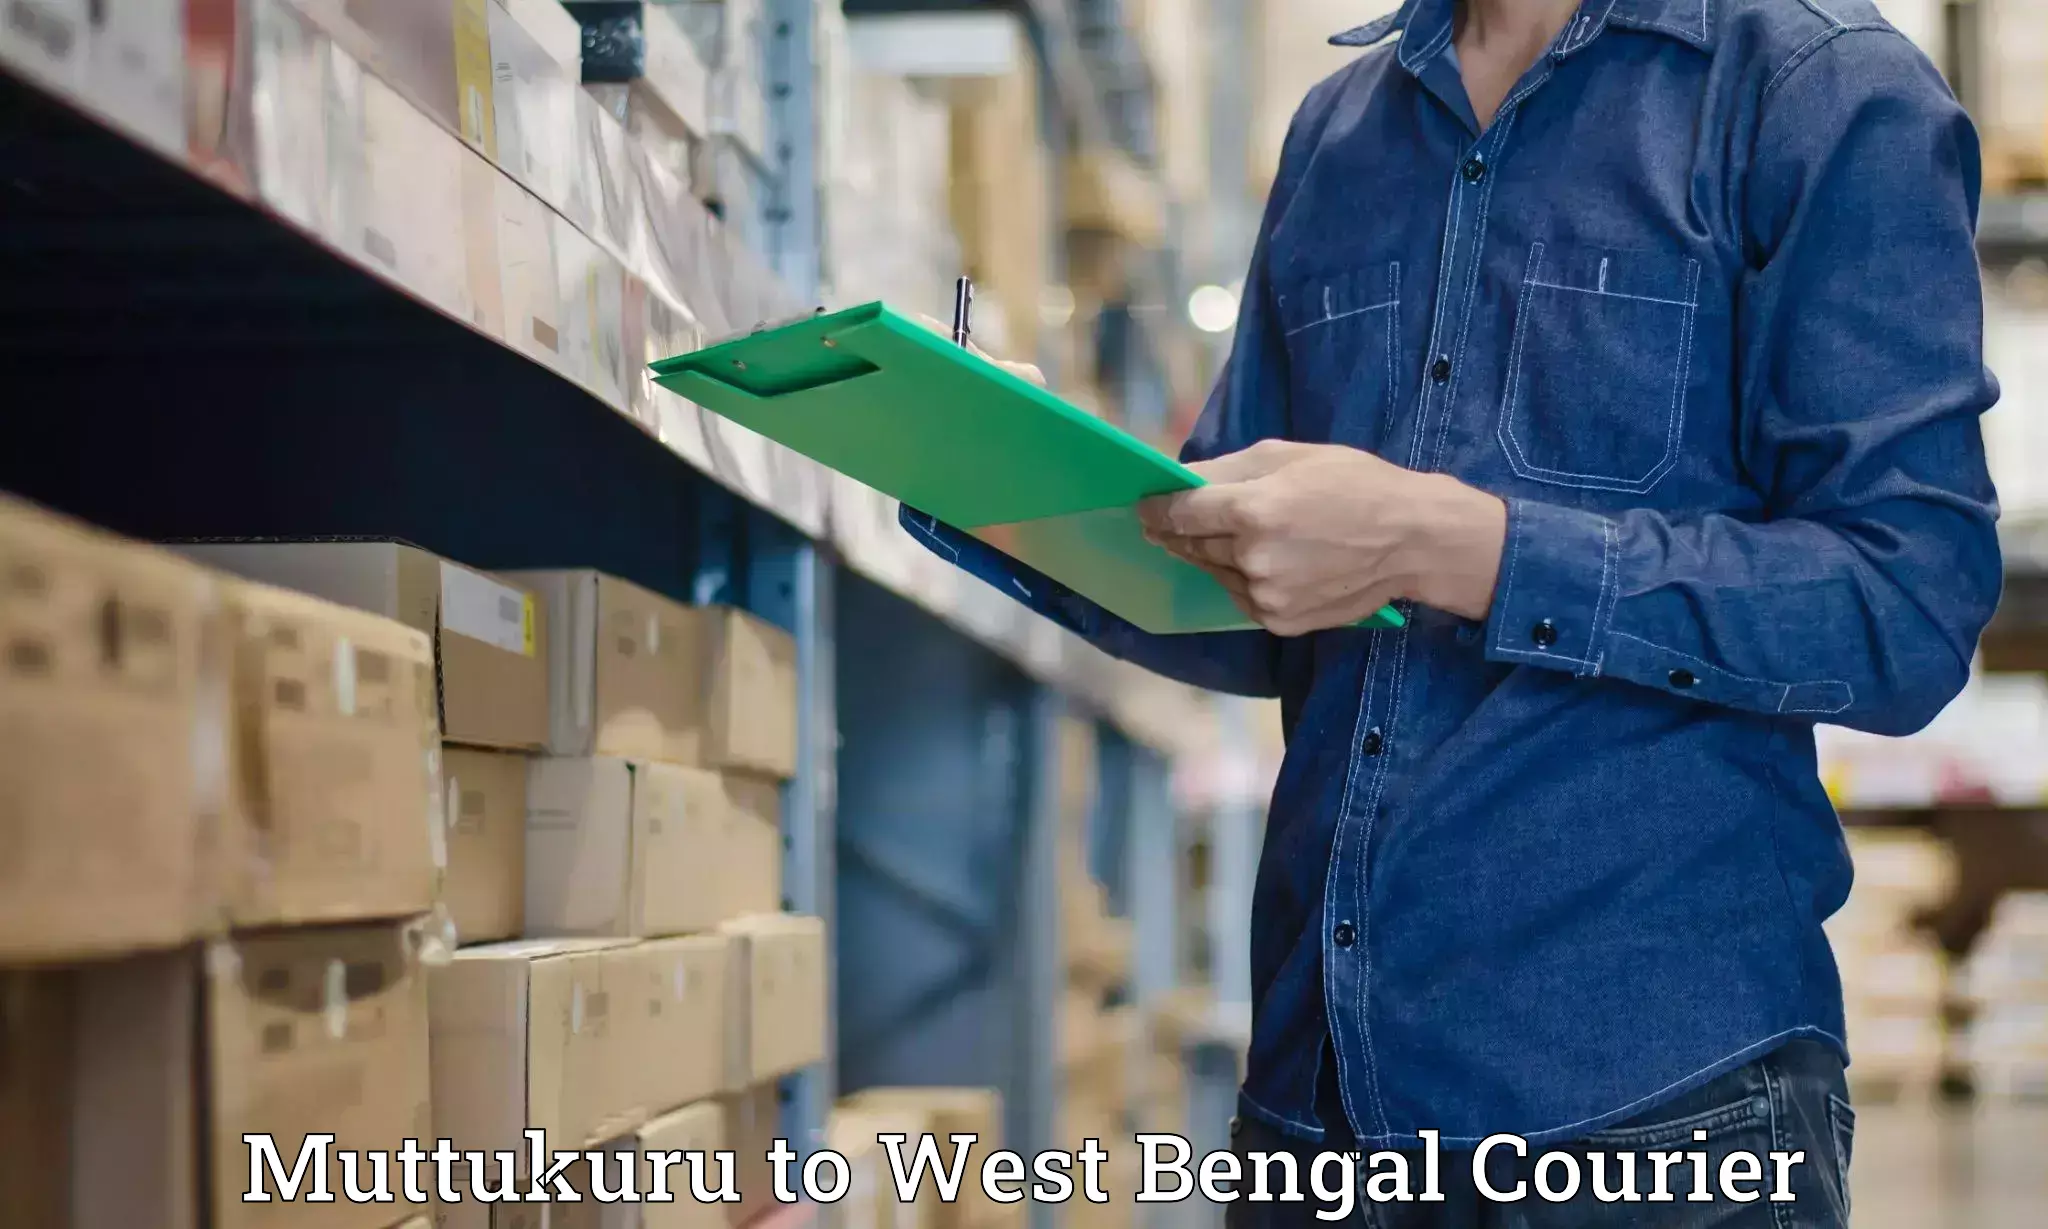 Dynamic courier operations Muttukuru to Birbhum